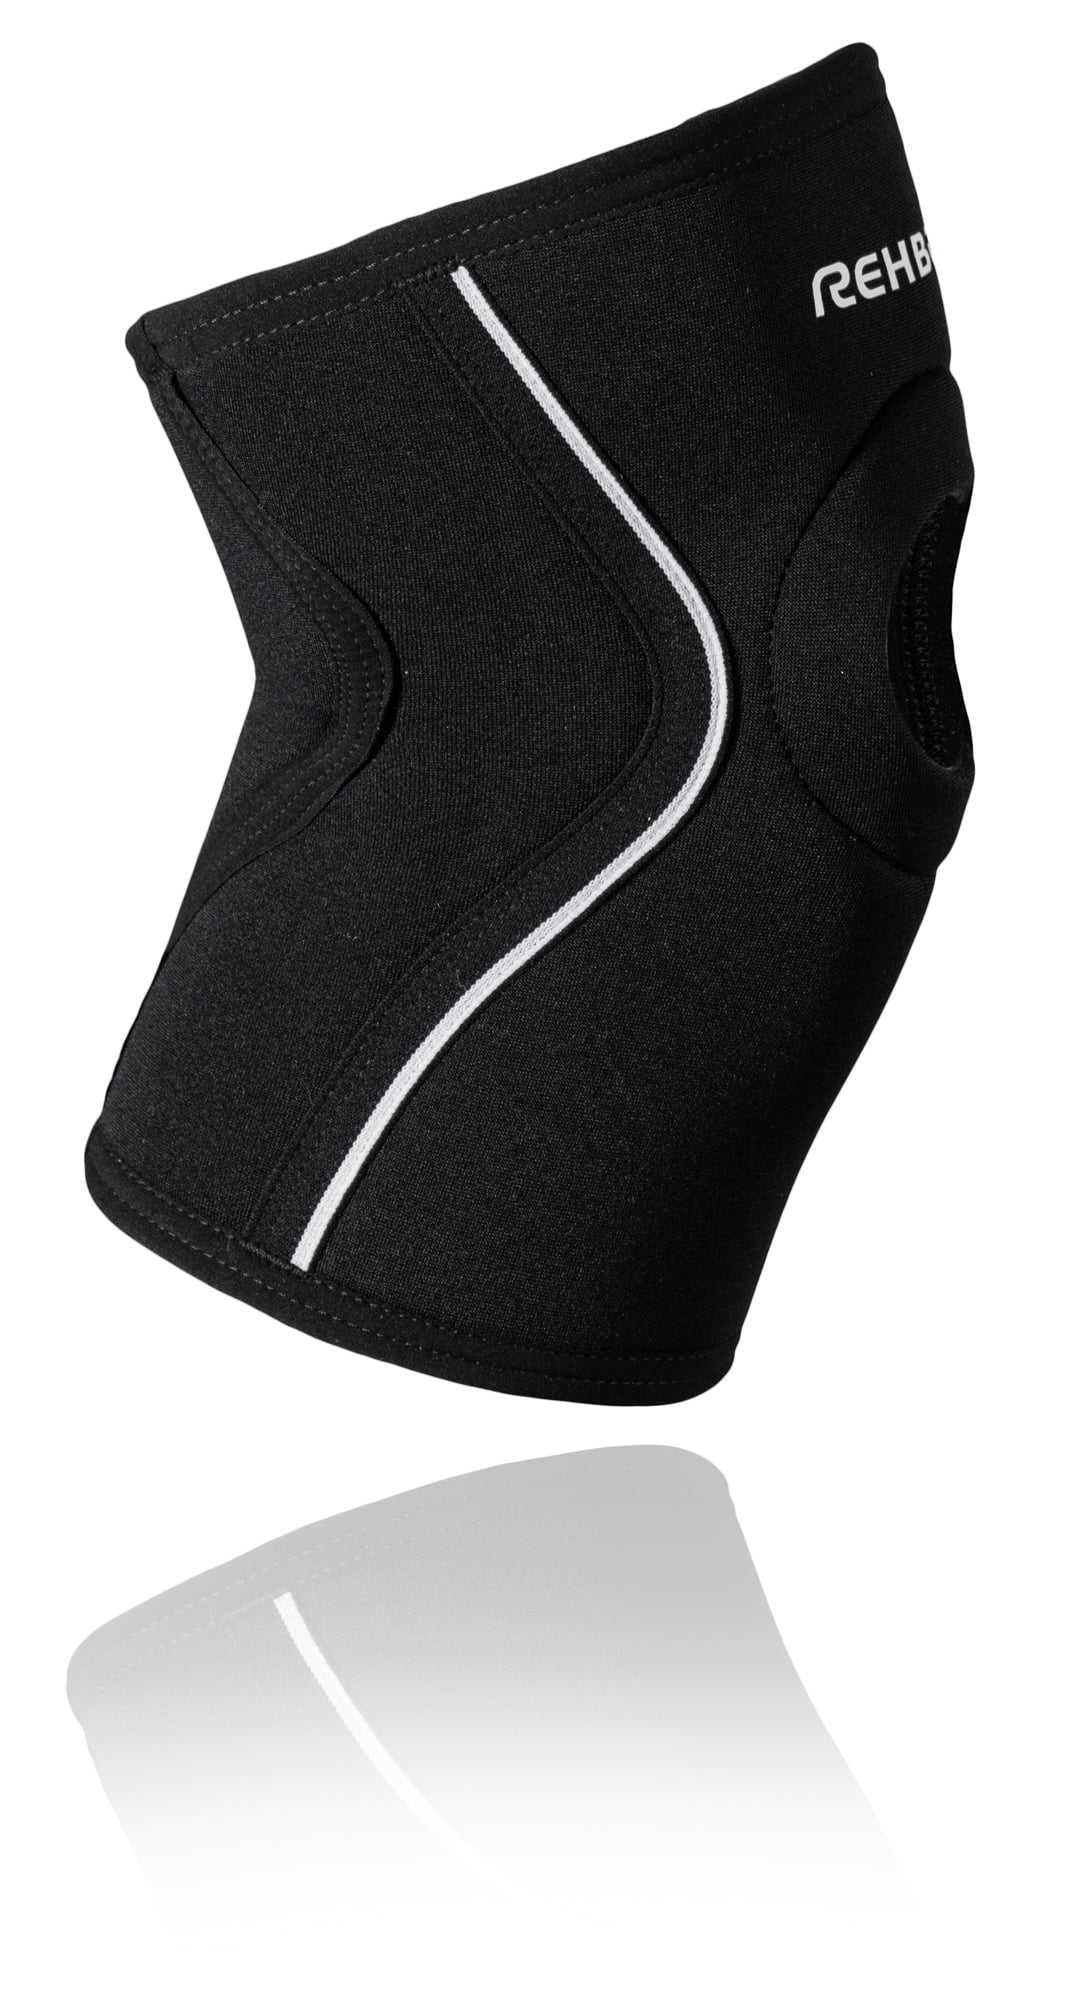 Купить бандаж на коленный сустав Киев Rehband 125306 - sportprotection 